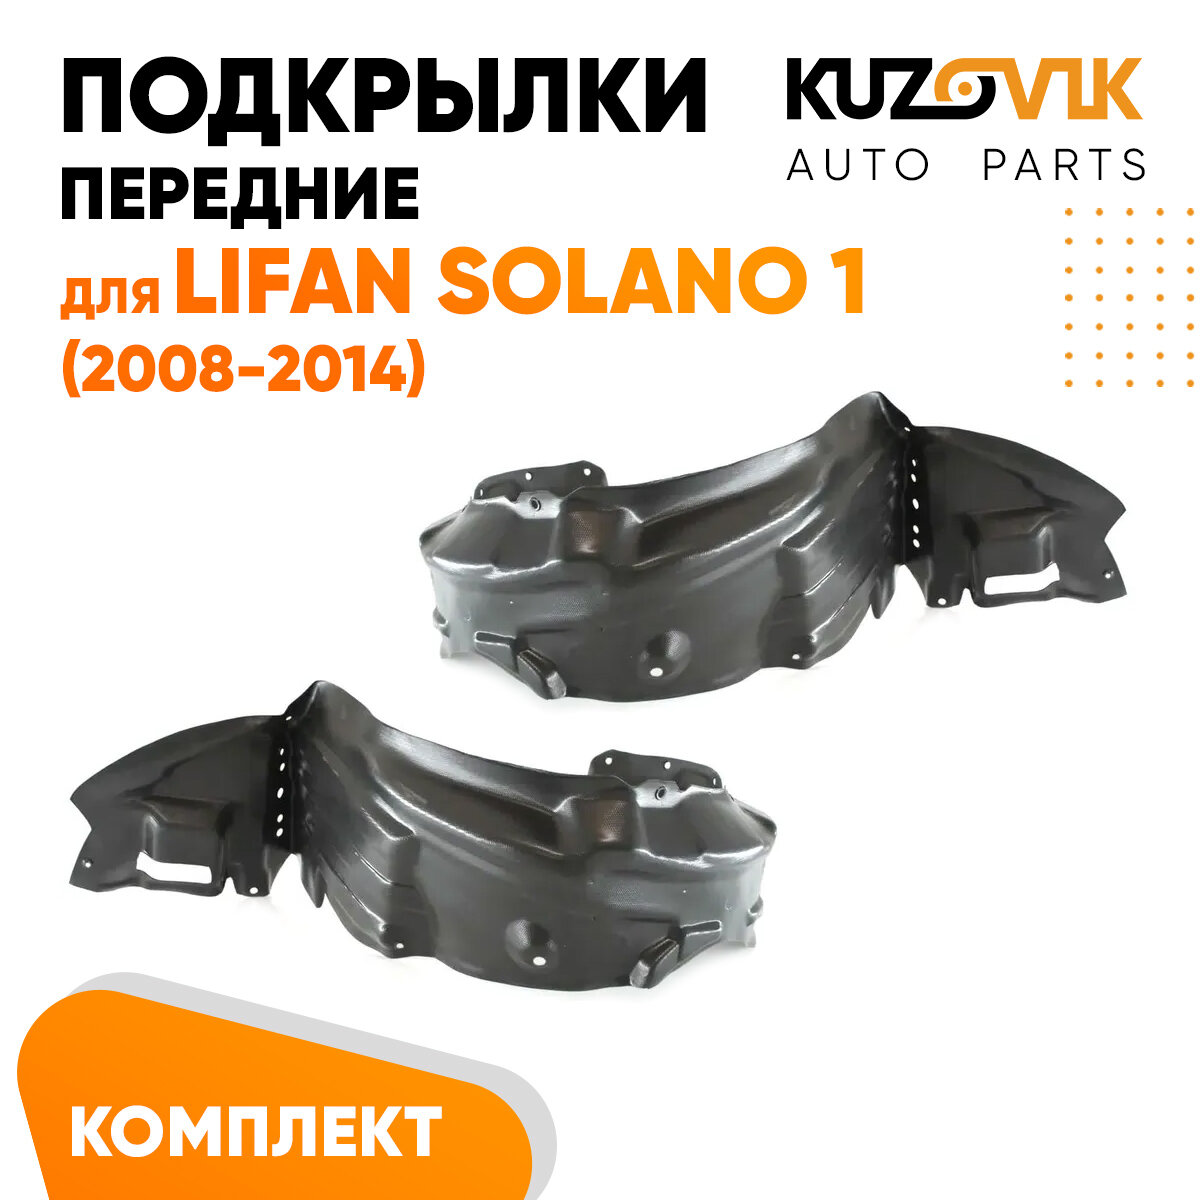 Подкрылки передние Lifan Solano 1 (2008-2014) 2 шт правый + левый